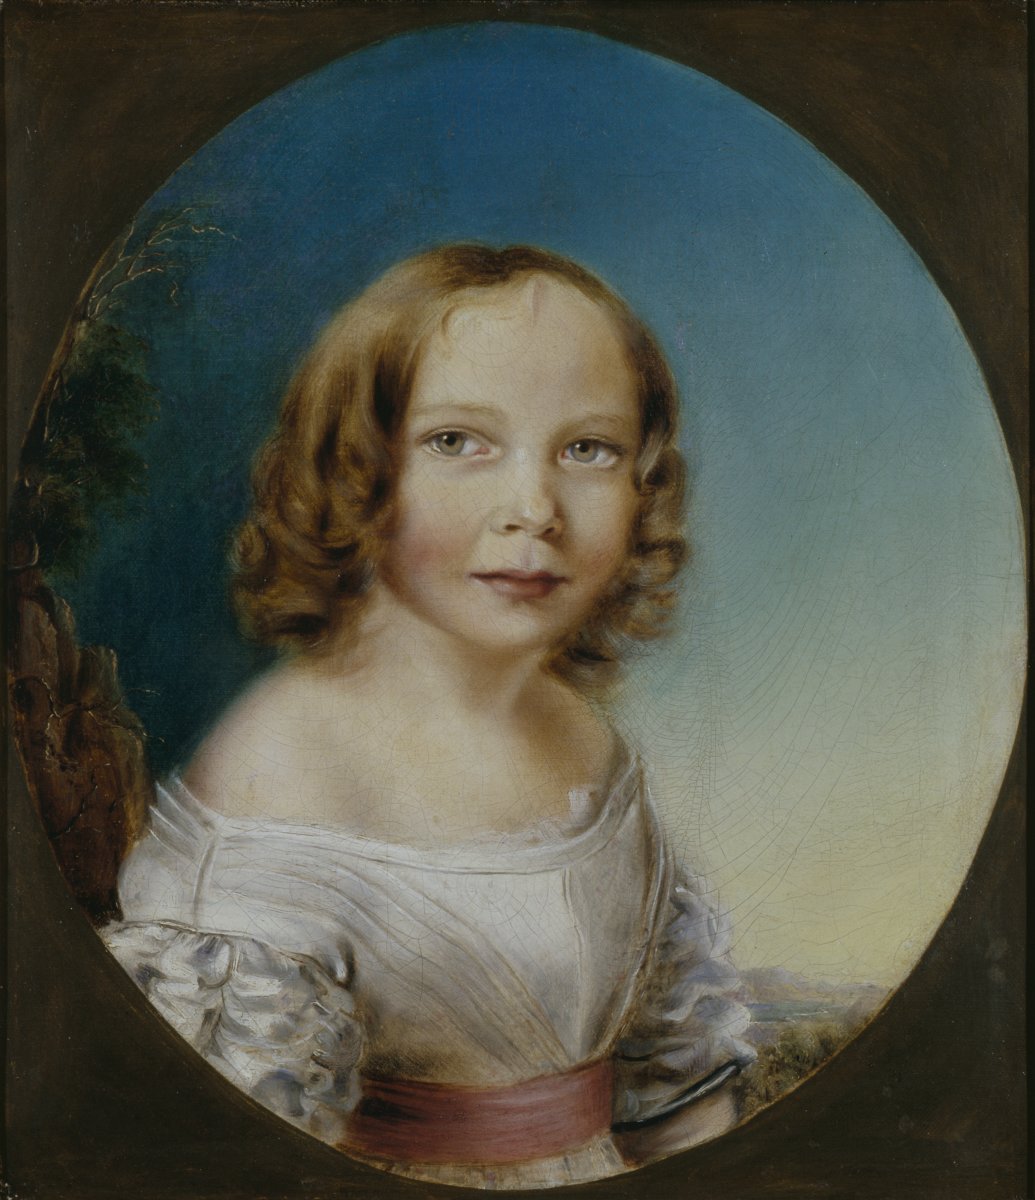 Image of Elizabeth Missing Sewell (1815-1906) author